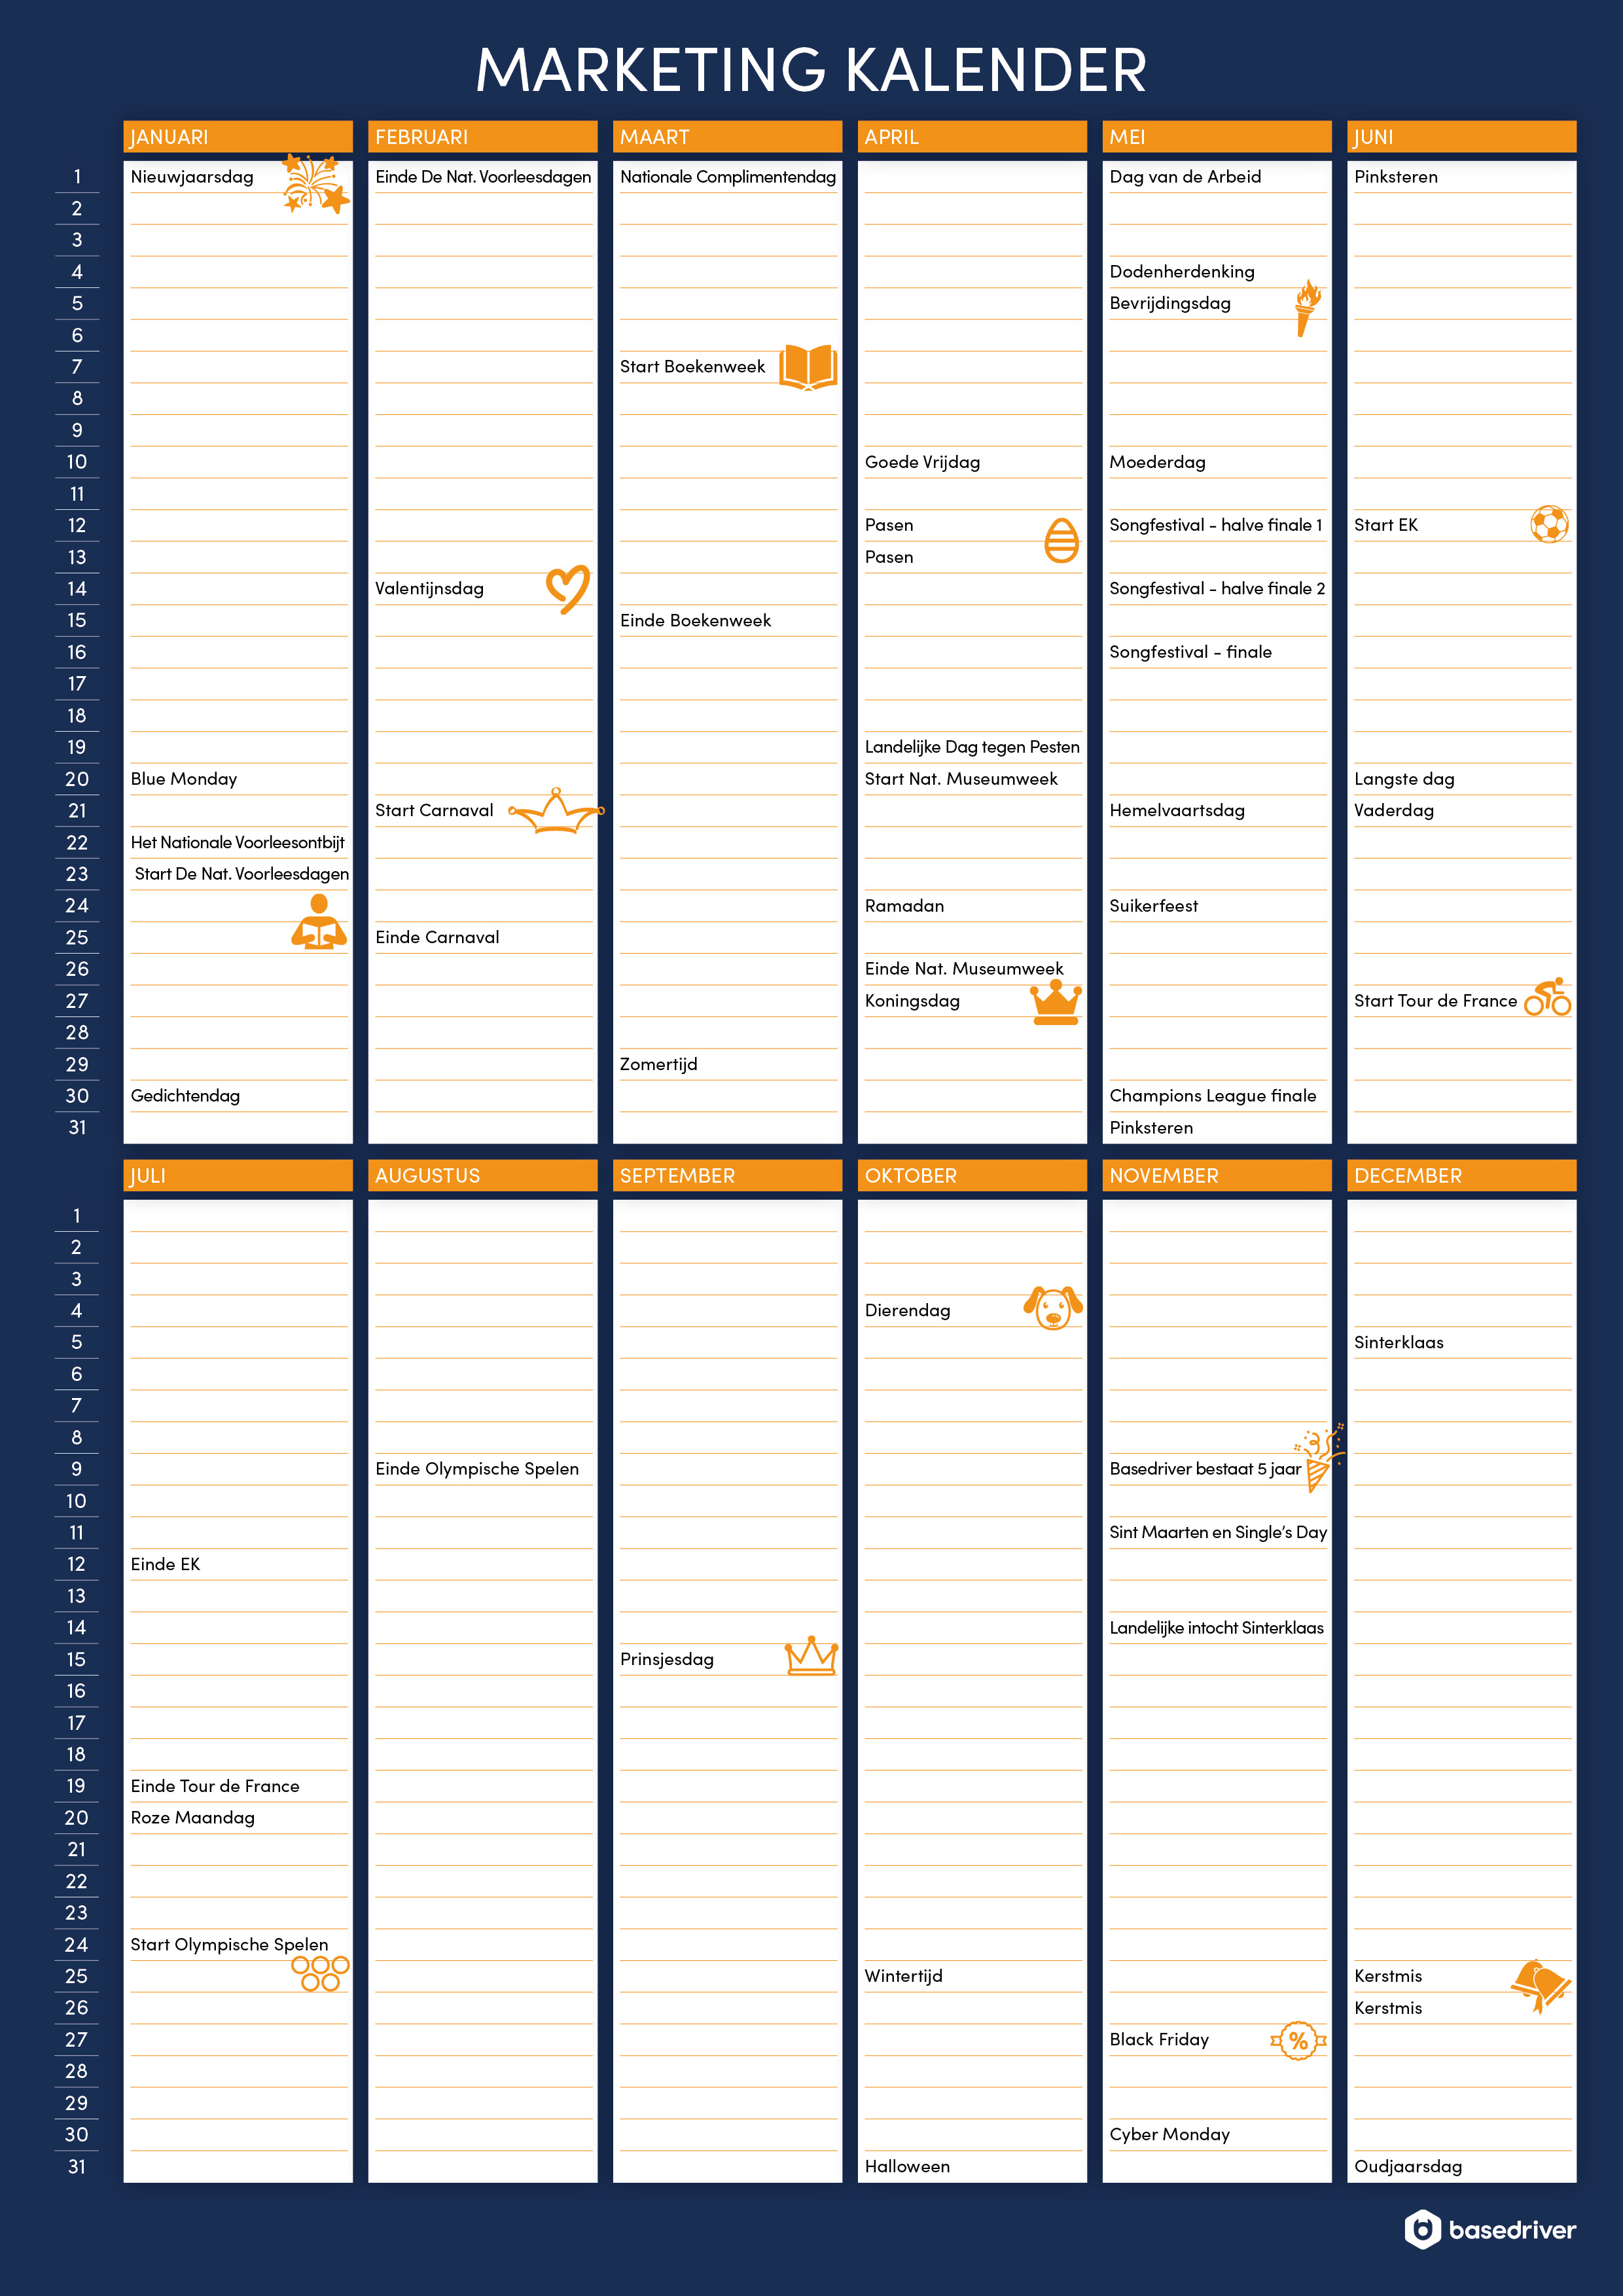 Beste 📆 Marketing kalender 2020: download gratis de kalender met inhakers EO-05